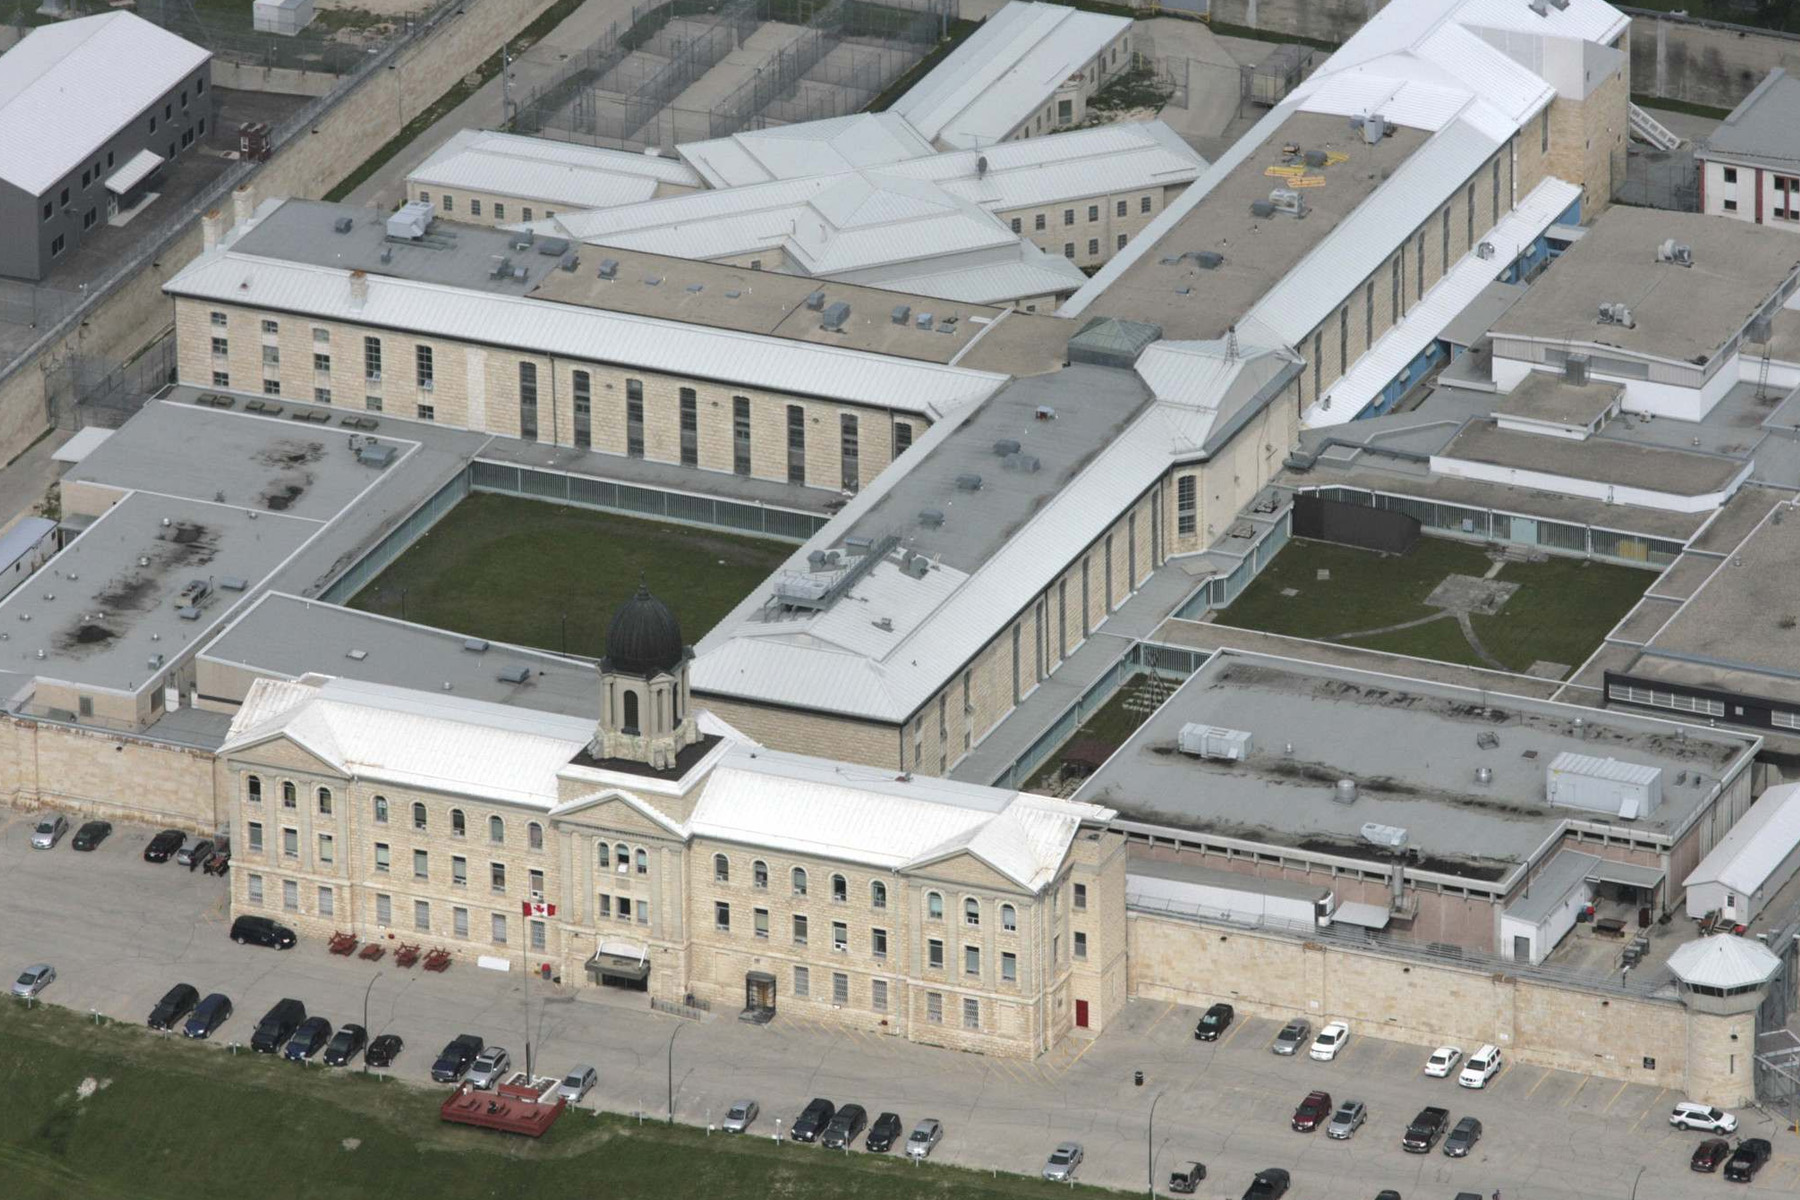 کشف و ضبط بیش از 360 هزار دلار کالای قاچاق در زندان استونی مانتین وینیپگ 